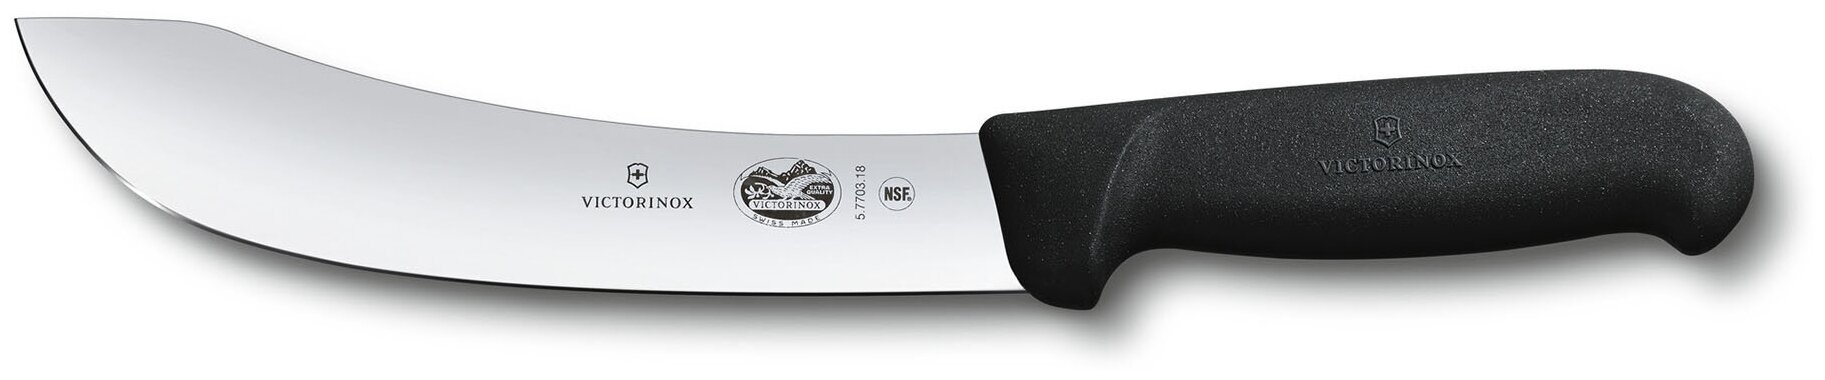 Нож кухонный Victorinox Skinning, разделочный, 180мм, заточка прямая, стальной, черный [5.7703.18]